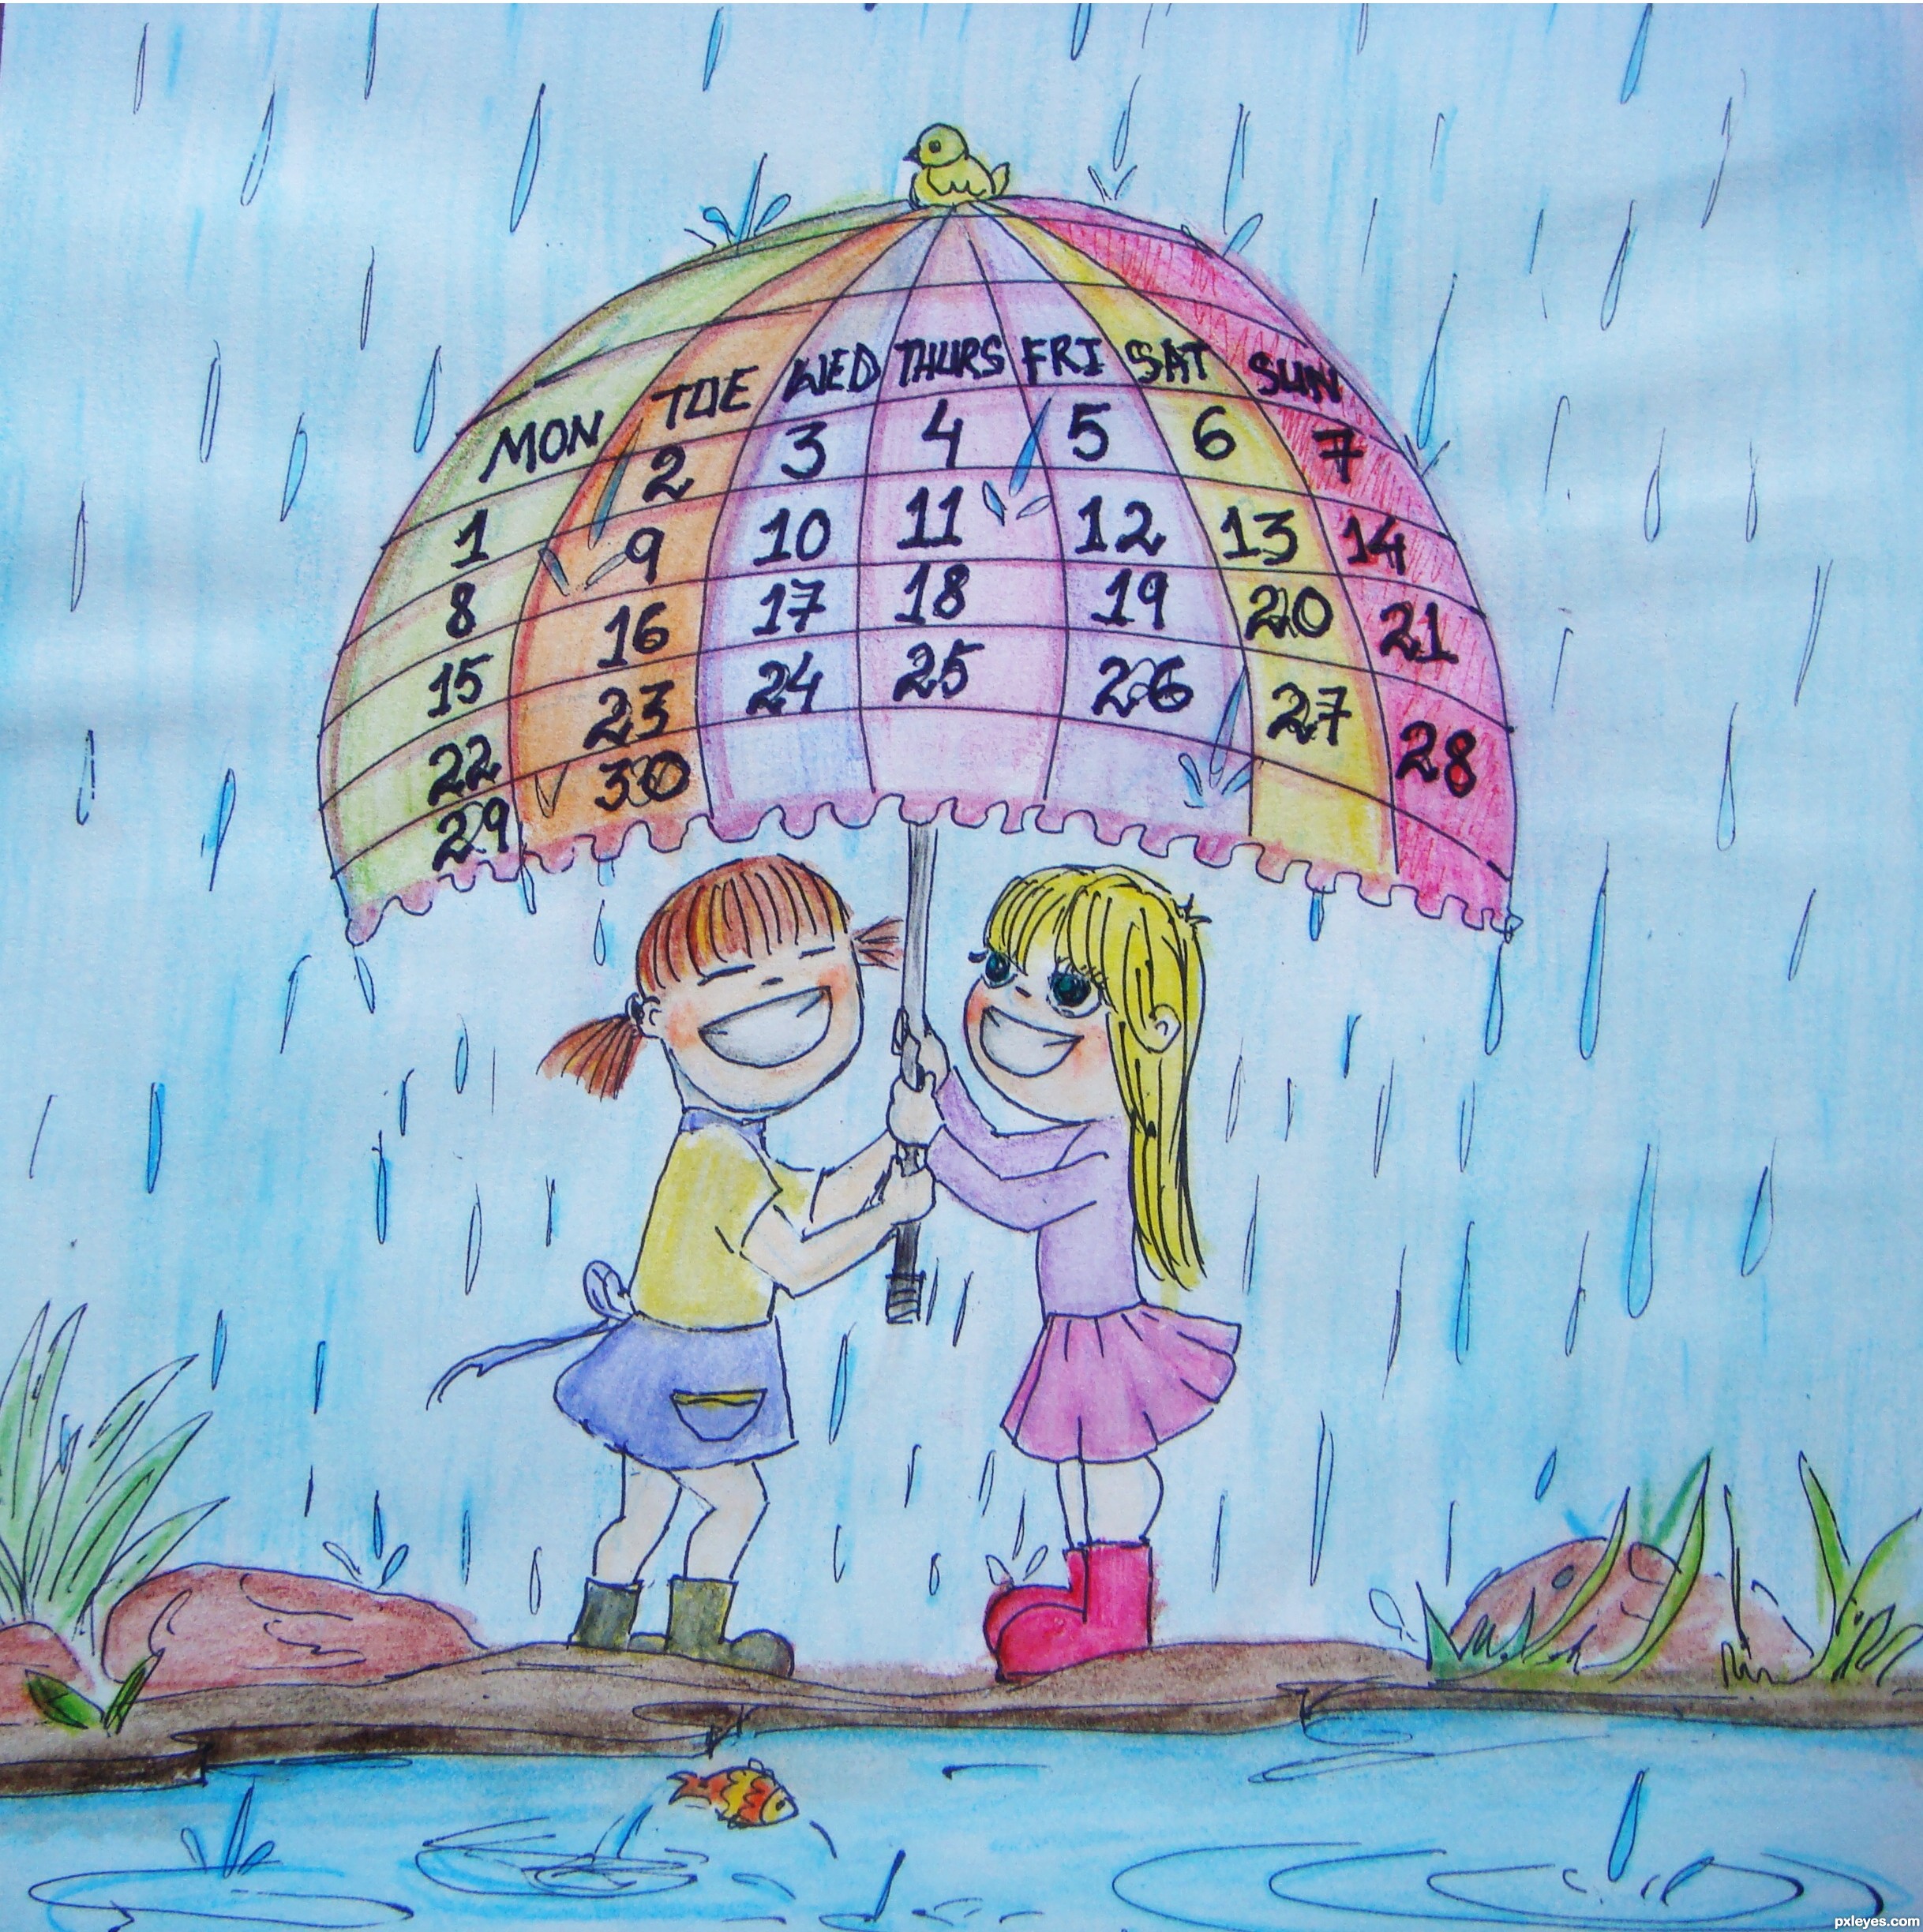 Rainy Season Drawing at GetDrawings | Free download